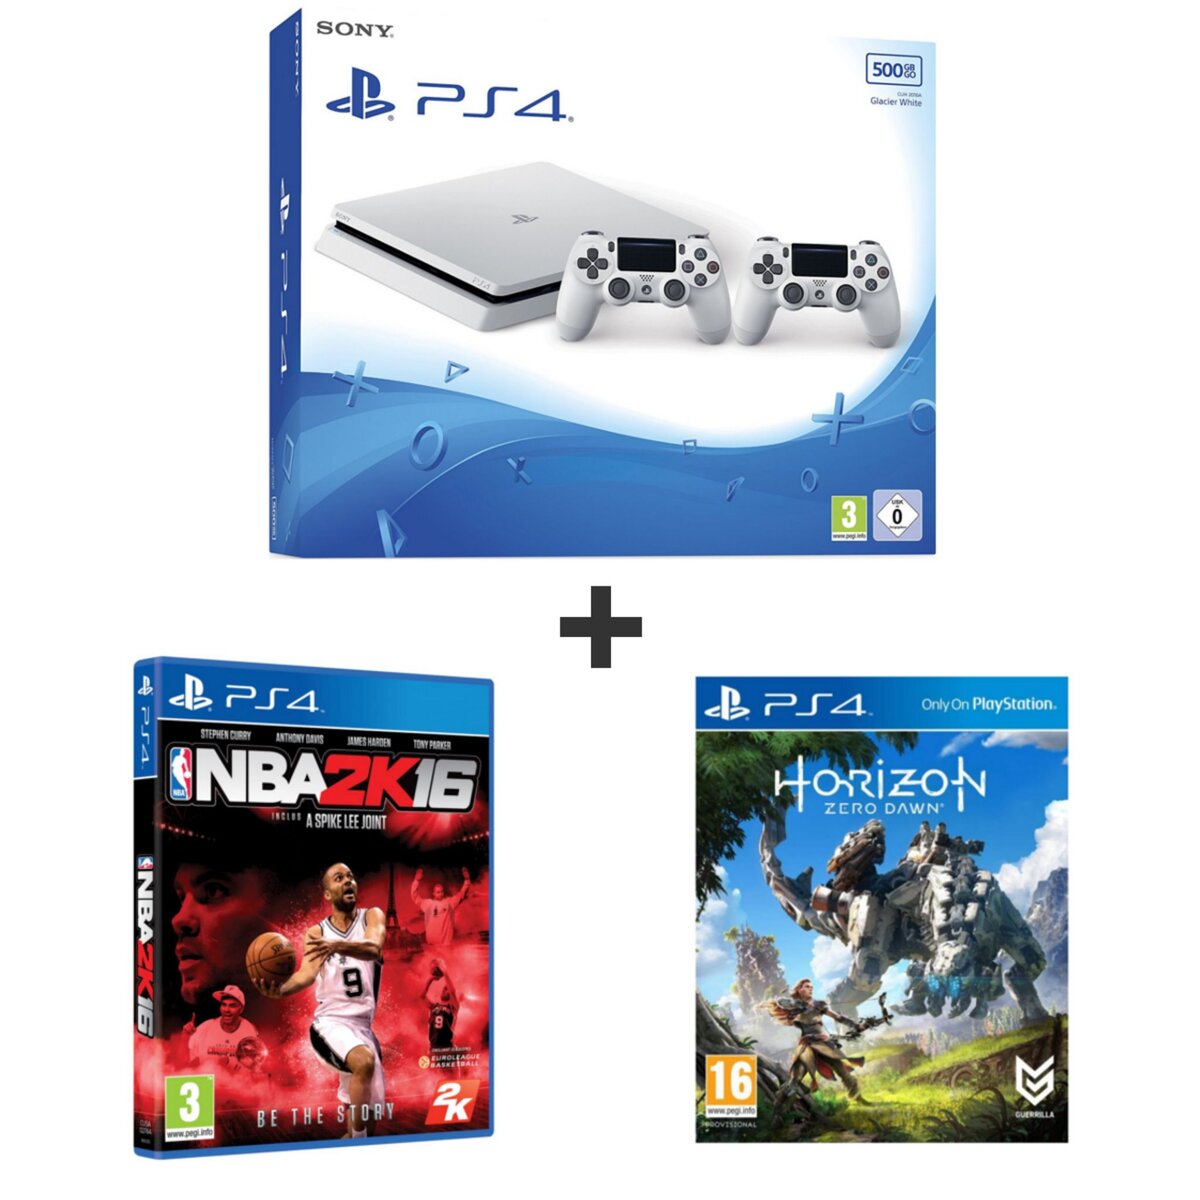 EXCLU WEB Console PS4 500Go White - 2 manettes + HORIZON ZERO DAWN + NBA 2K16